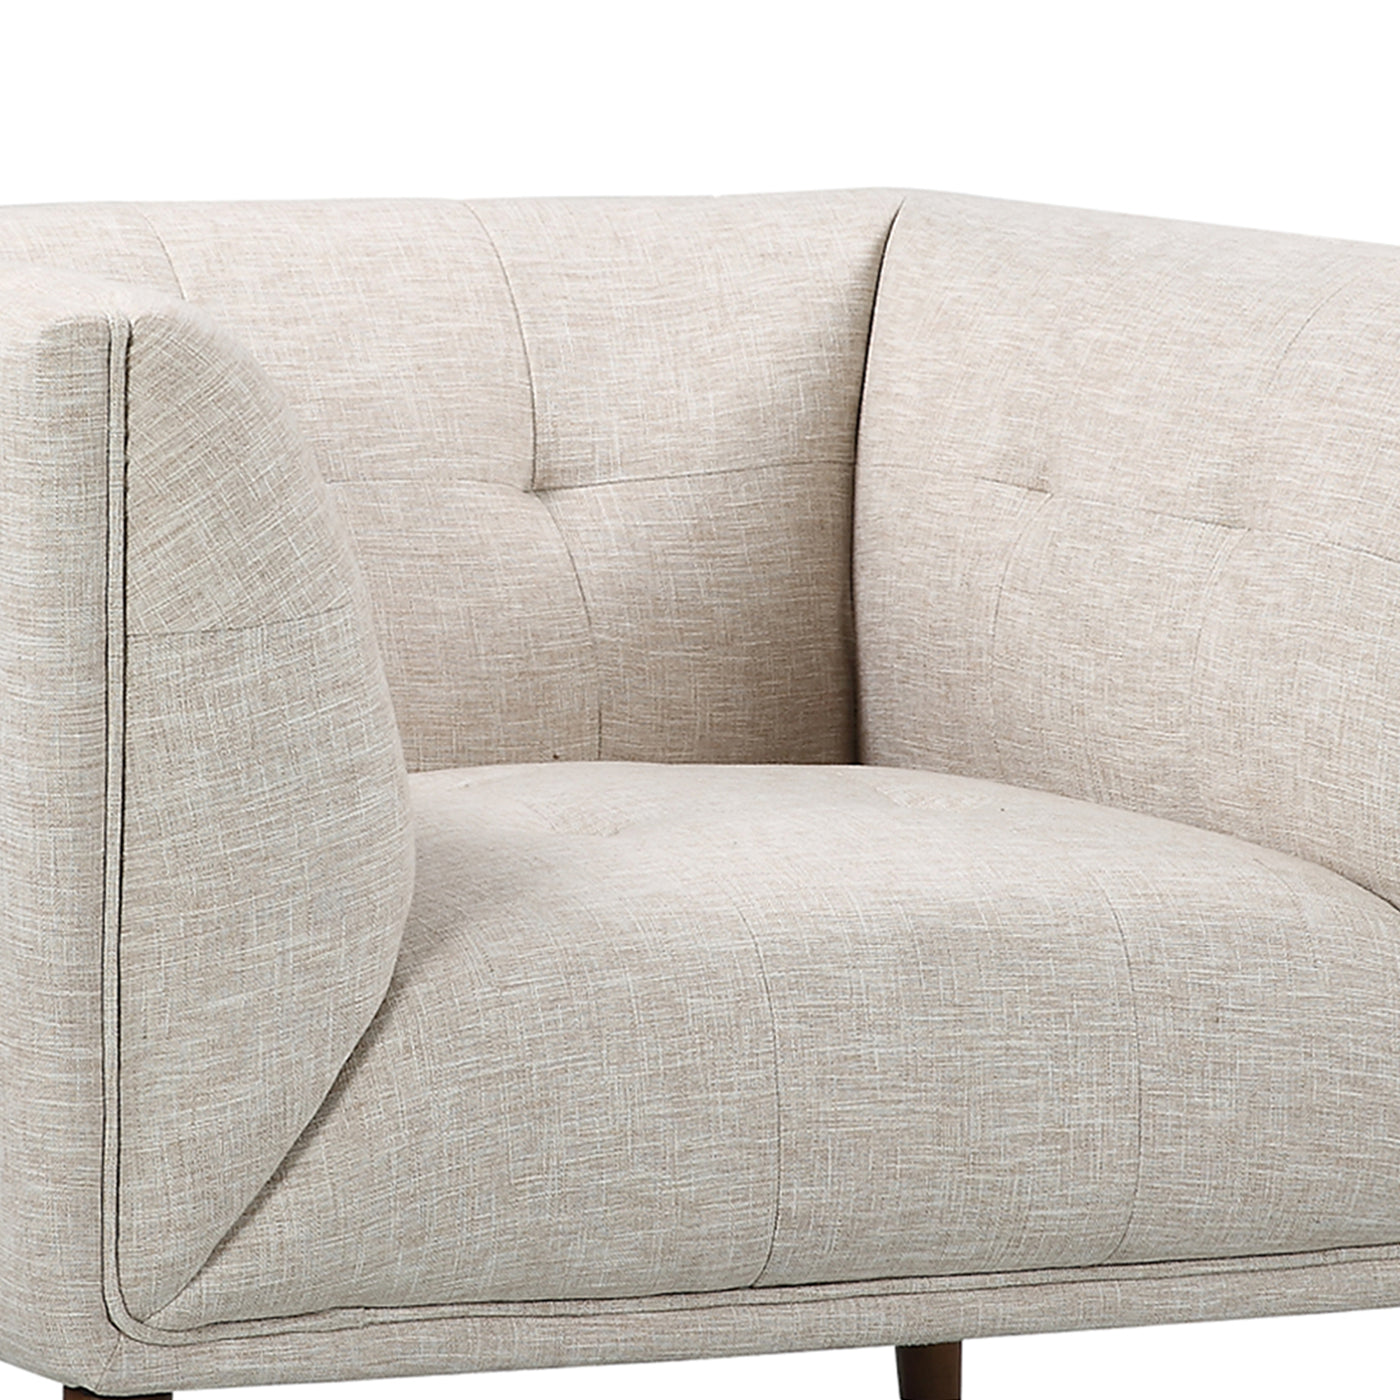 Hudson Sofa Chair